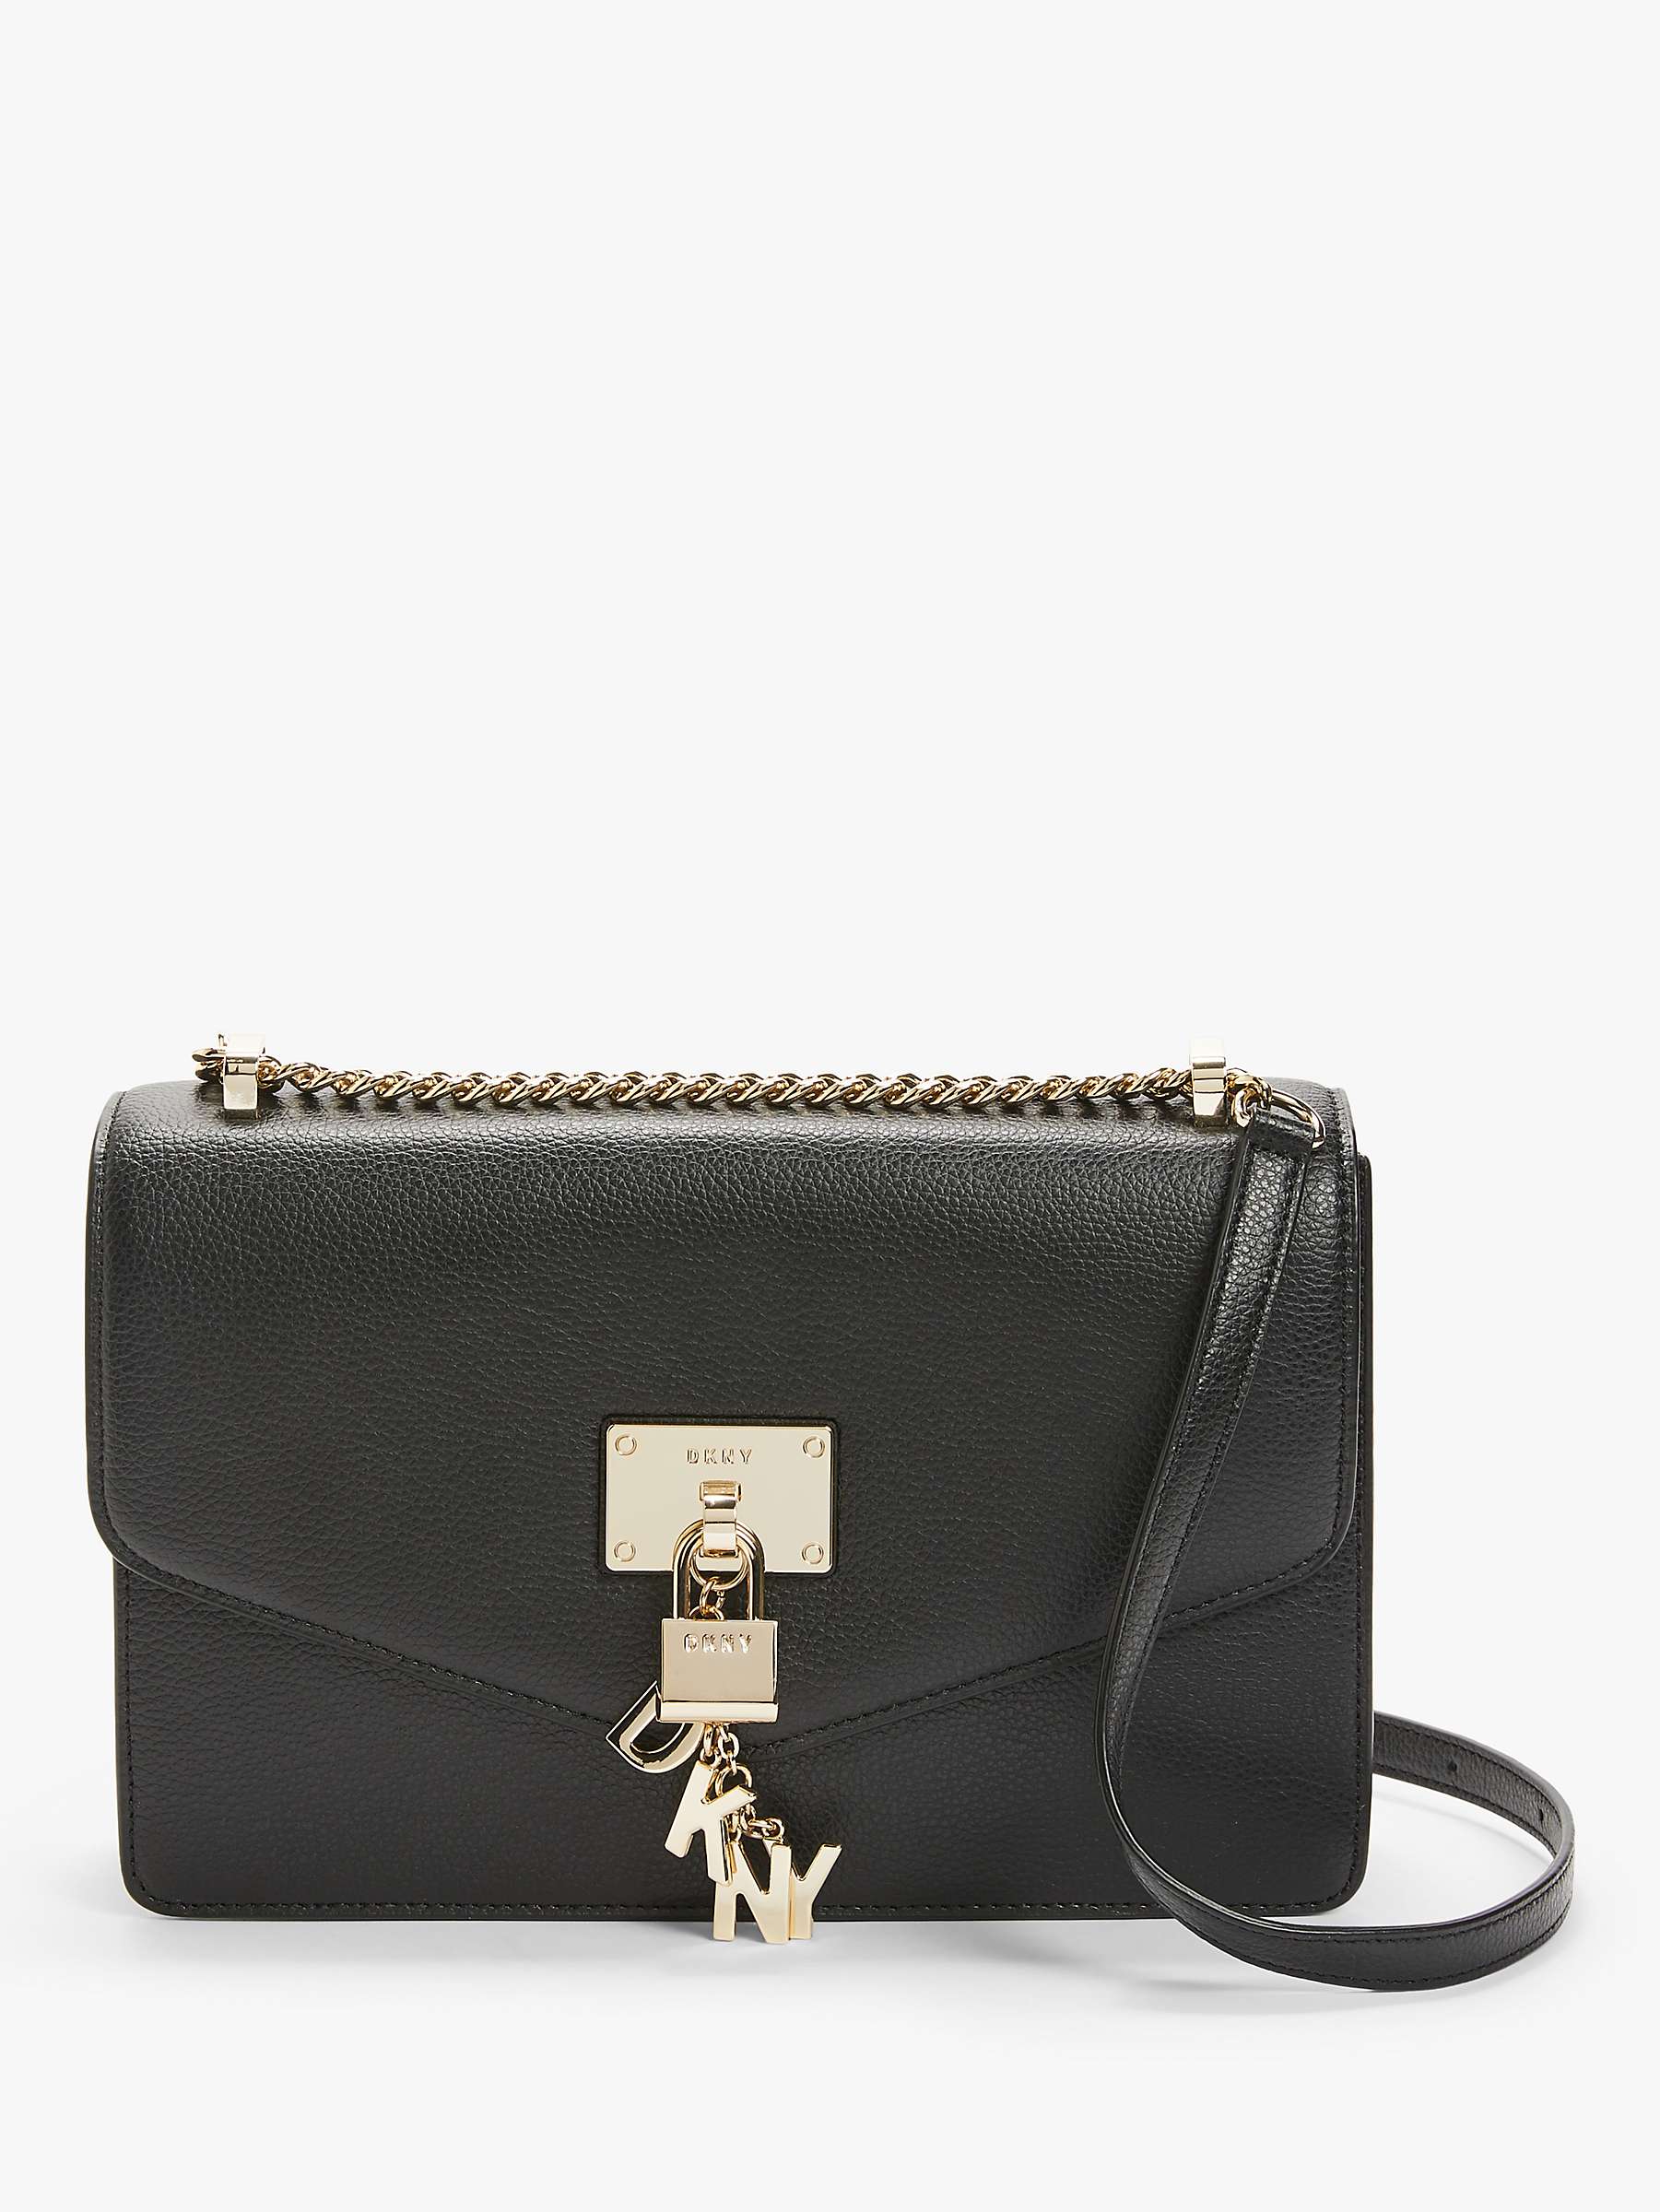 Buy DKNY Elissa Large Leather Shoulder Bag Online at johnlewis.com